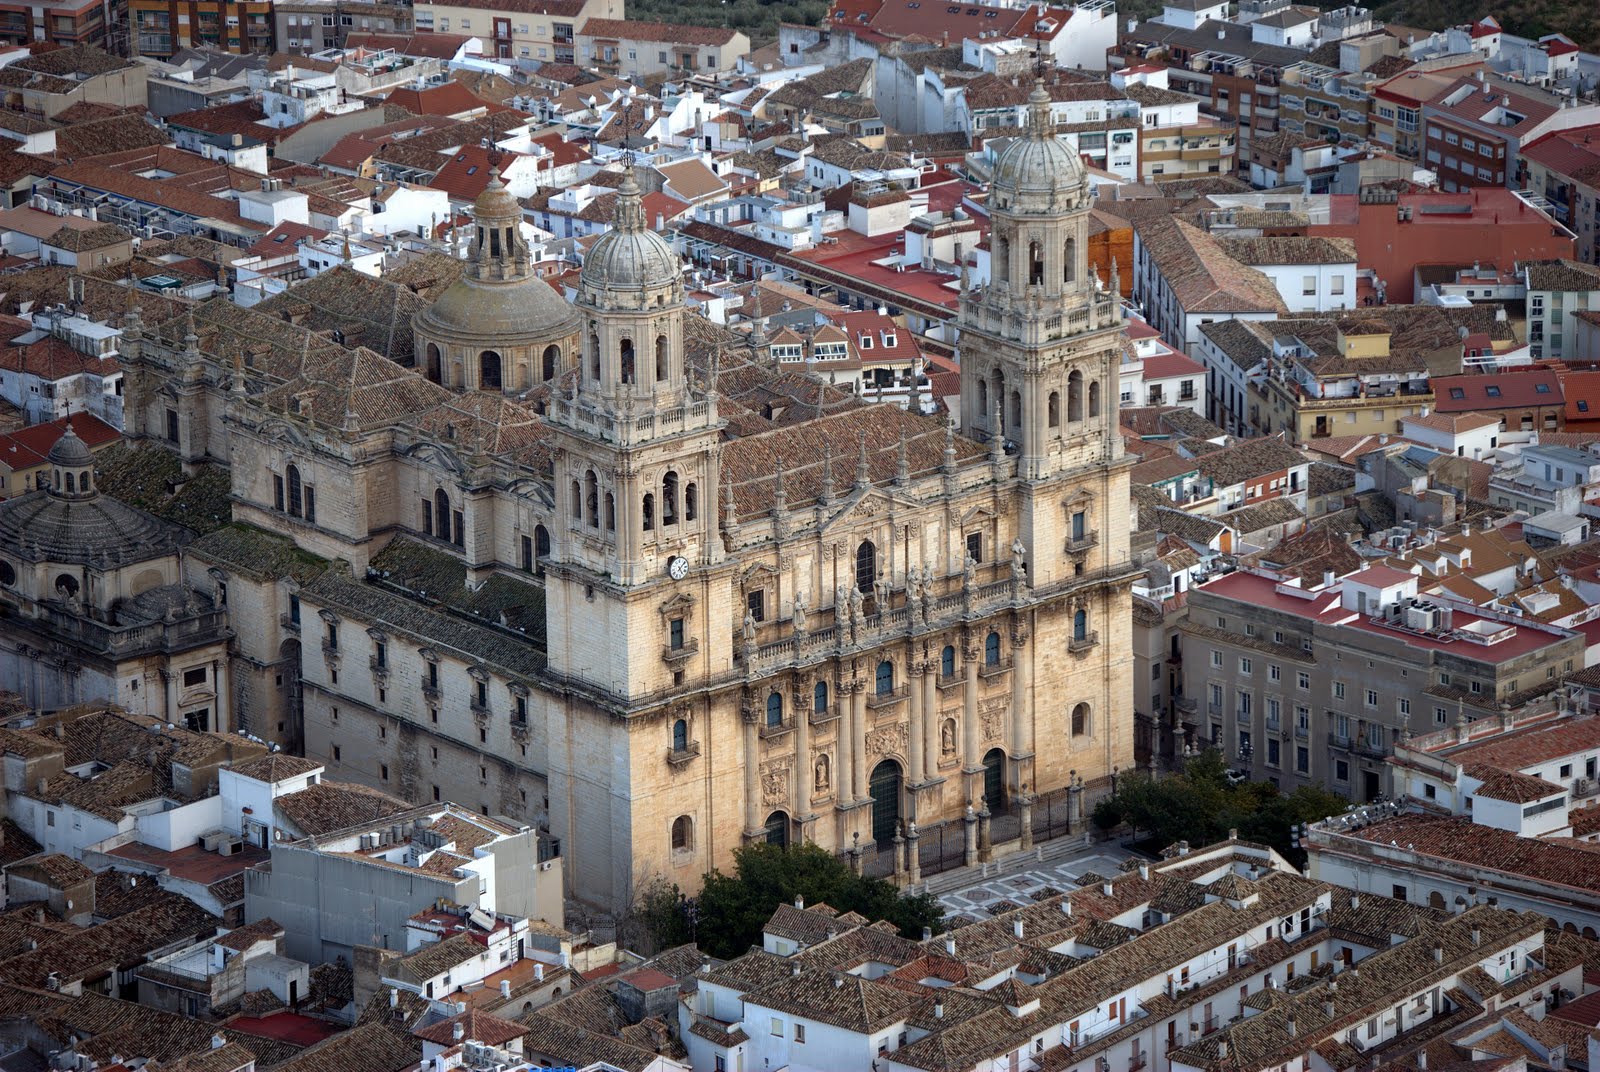 La Consejería de Cultura da luz verde a la obra de emergencia en la cubierta de la Catedral - Diario Guadalquivir